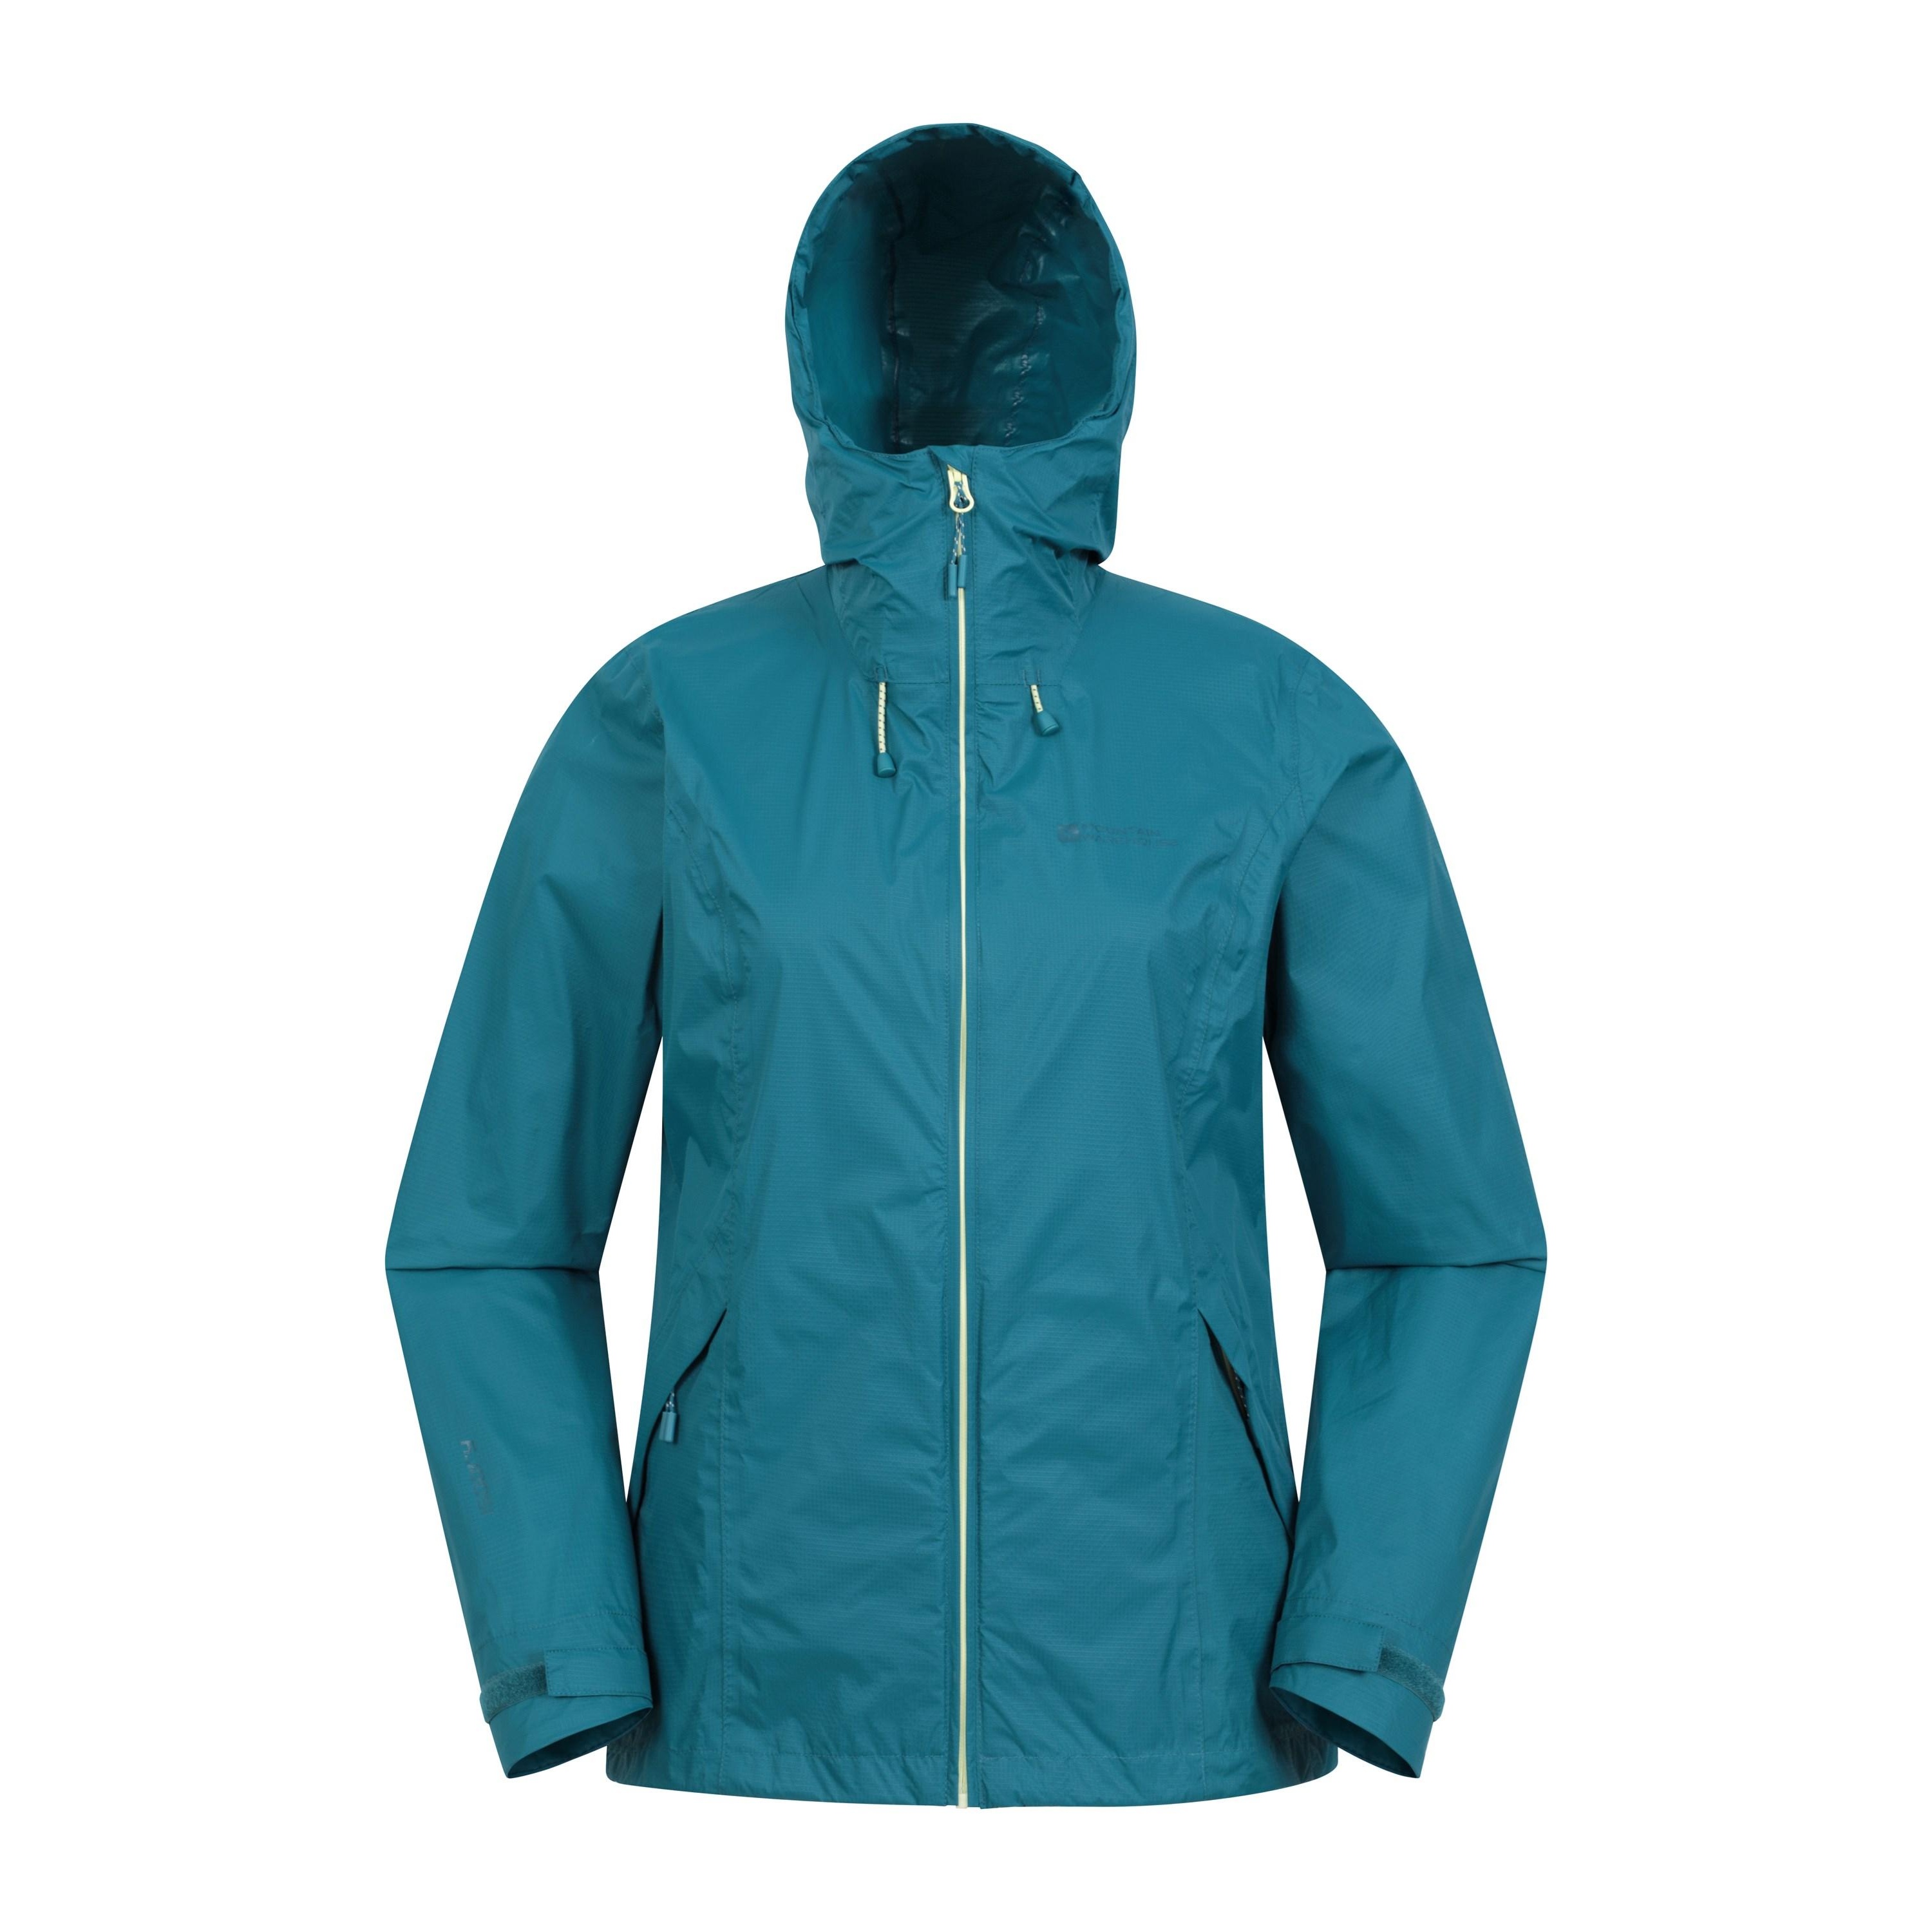 Mountain Warehouse Womens/Ladies Swerve Packaway Waterproof Jacket (Teal)